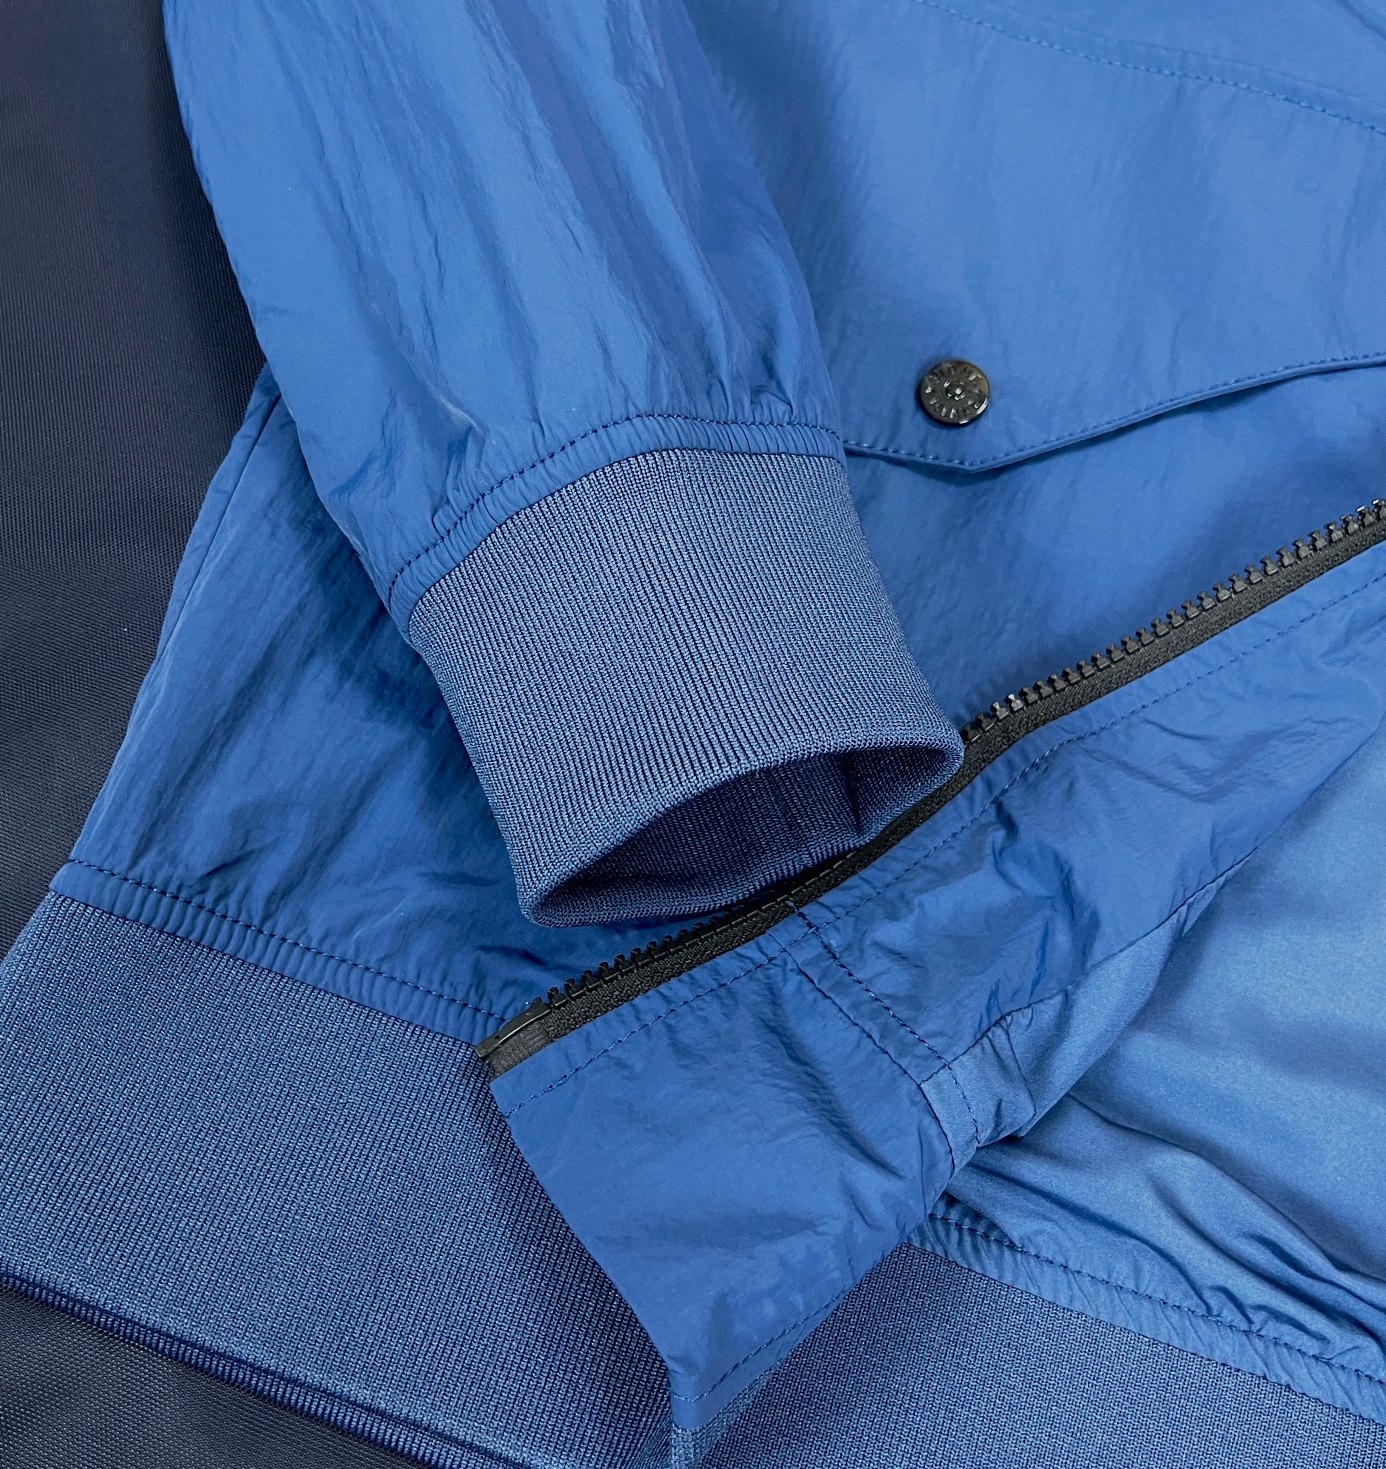 ストーン アイランド シェル ジャケットコピー トップス 防水 軽量 ファッション 人気アウター 2色可選 ブルー_7